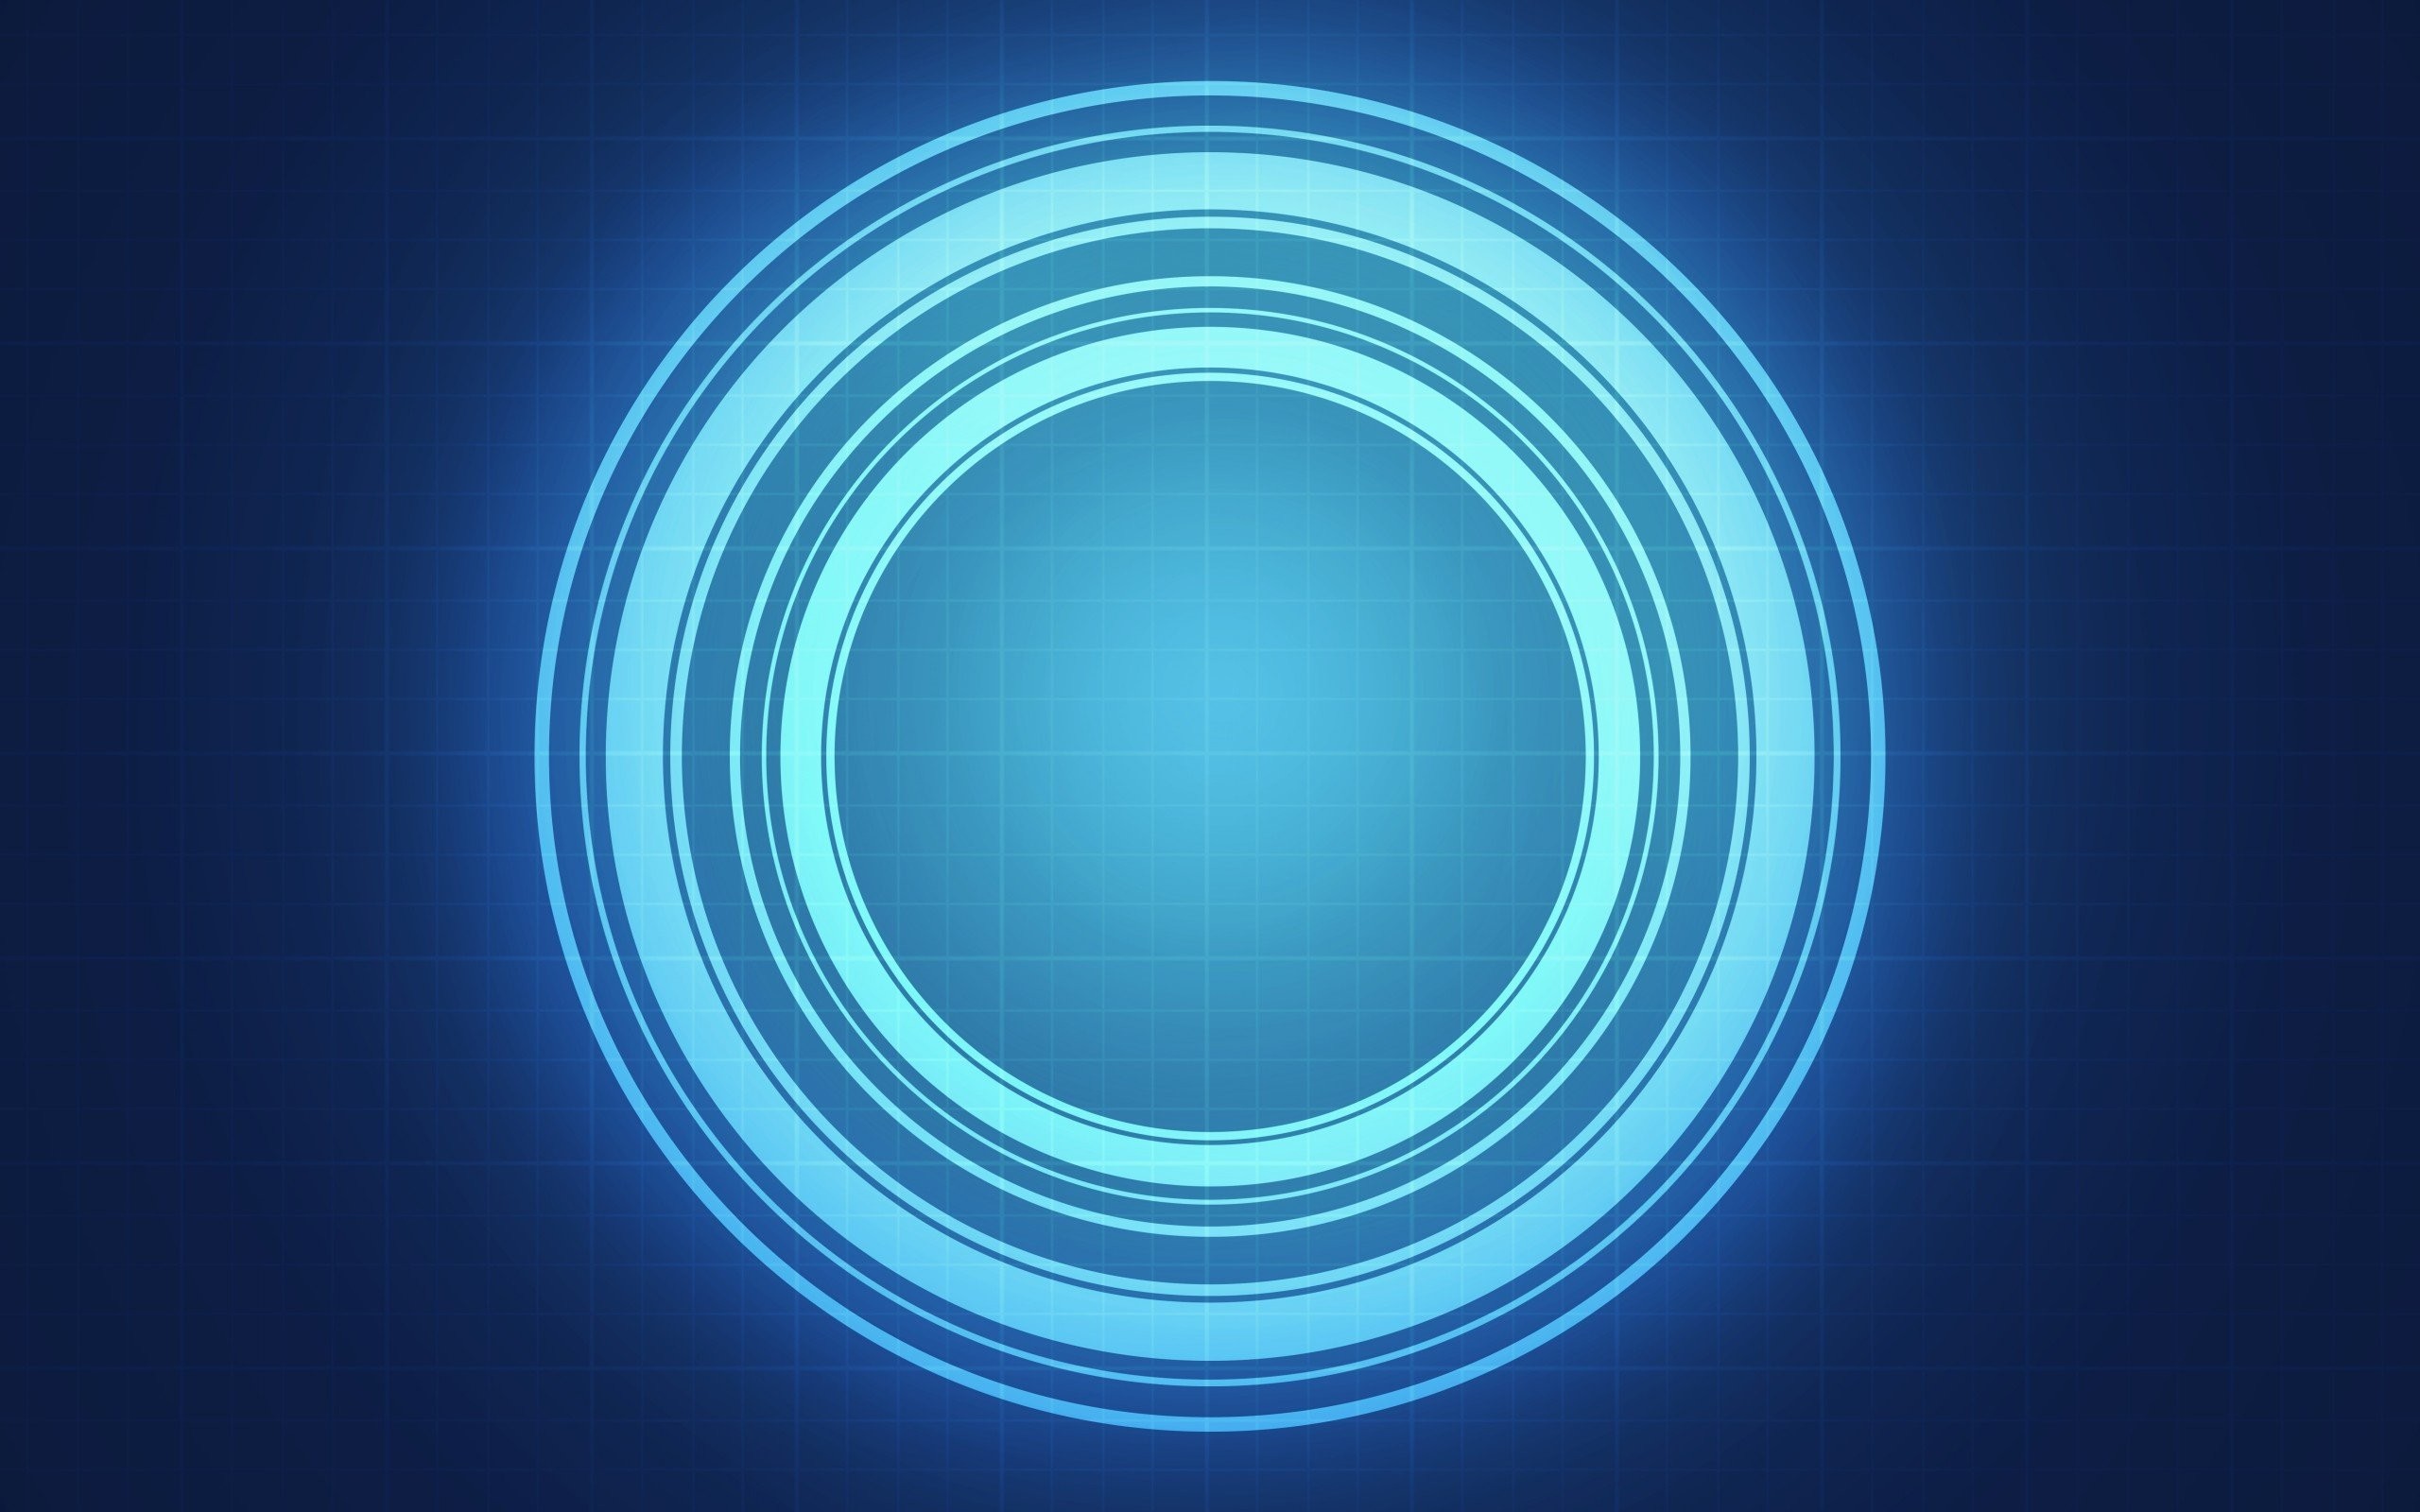 sfondo del cerchio,blu,cerchio,font,blu elettrico,cielo